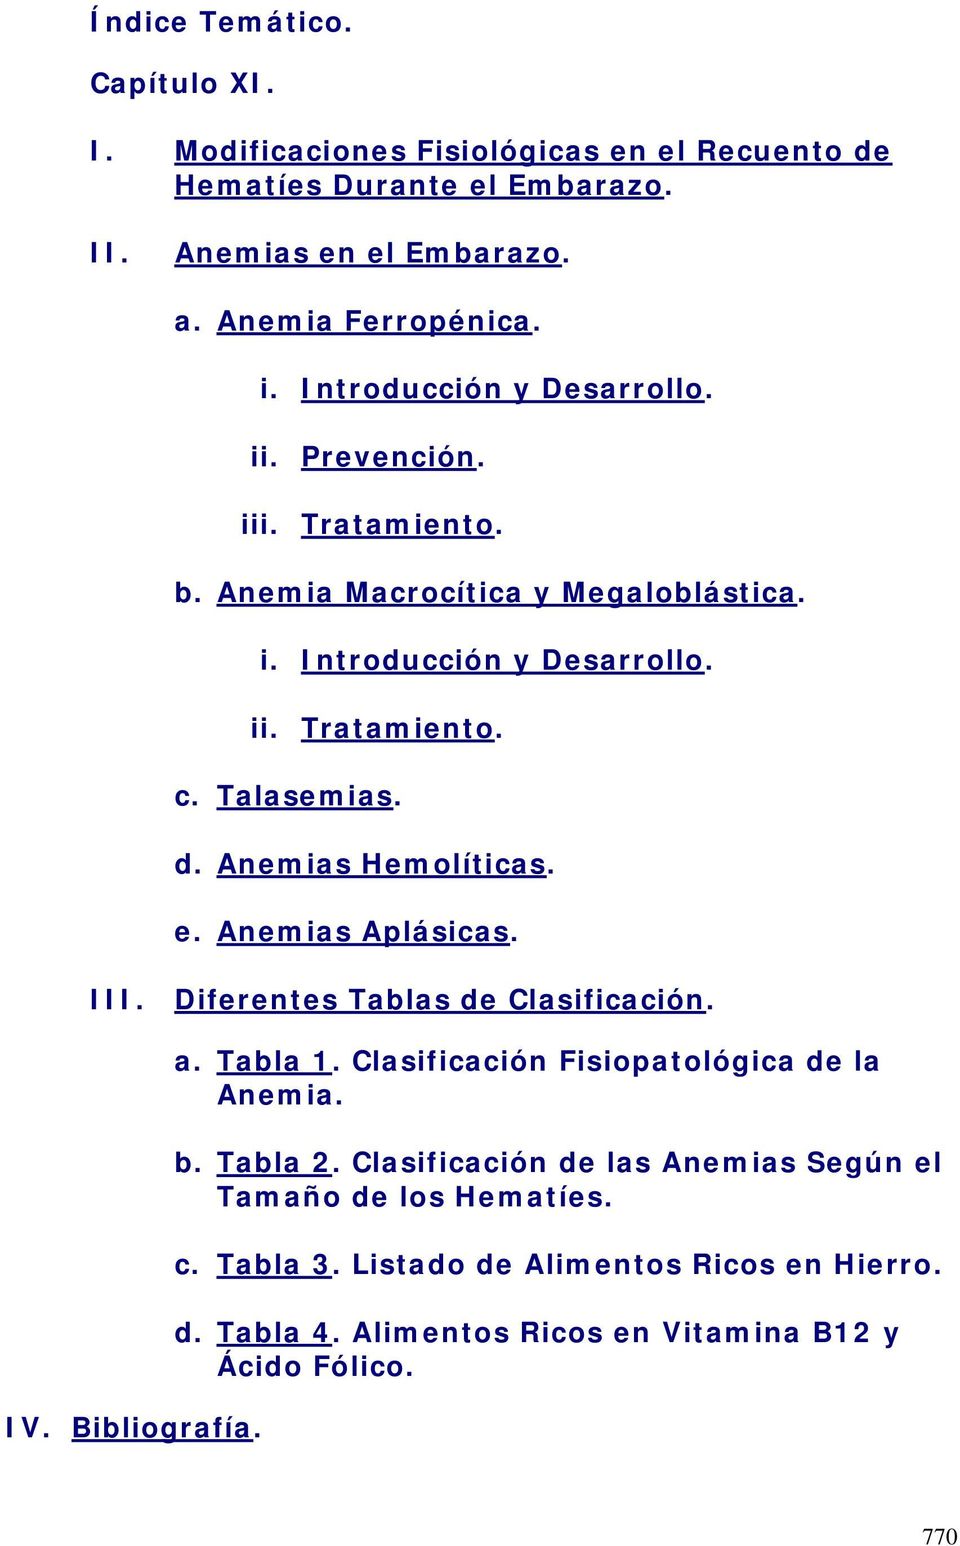 Anemias Hemolíticas. e. Anemias Aplásicas. III. Diferentes Tablas de Clasificación. IV. Bibliografía. a. Tabla 1. Clasificación Fisiopatológica de la Anemia. b. Tabla 2.